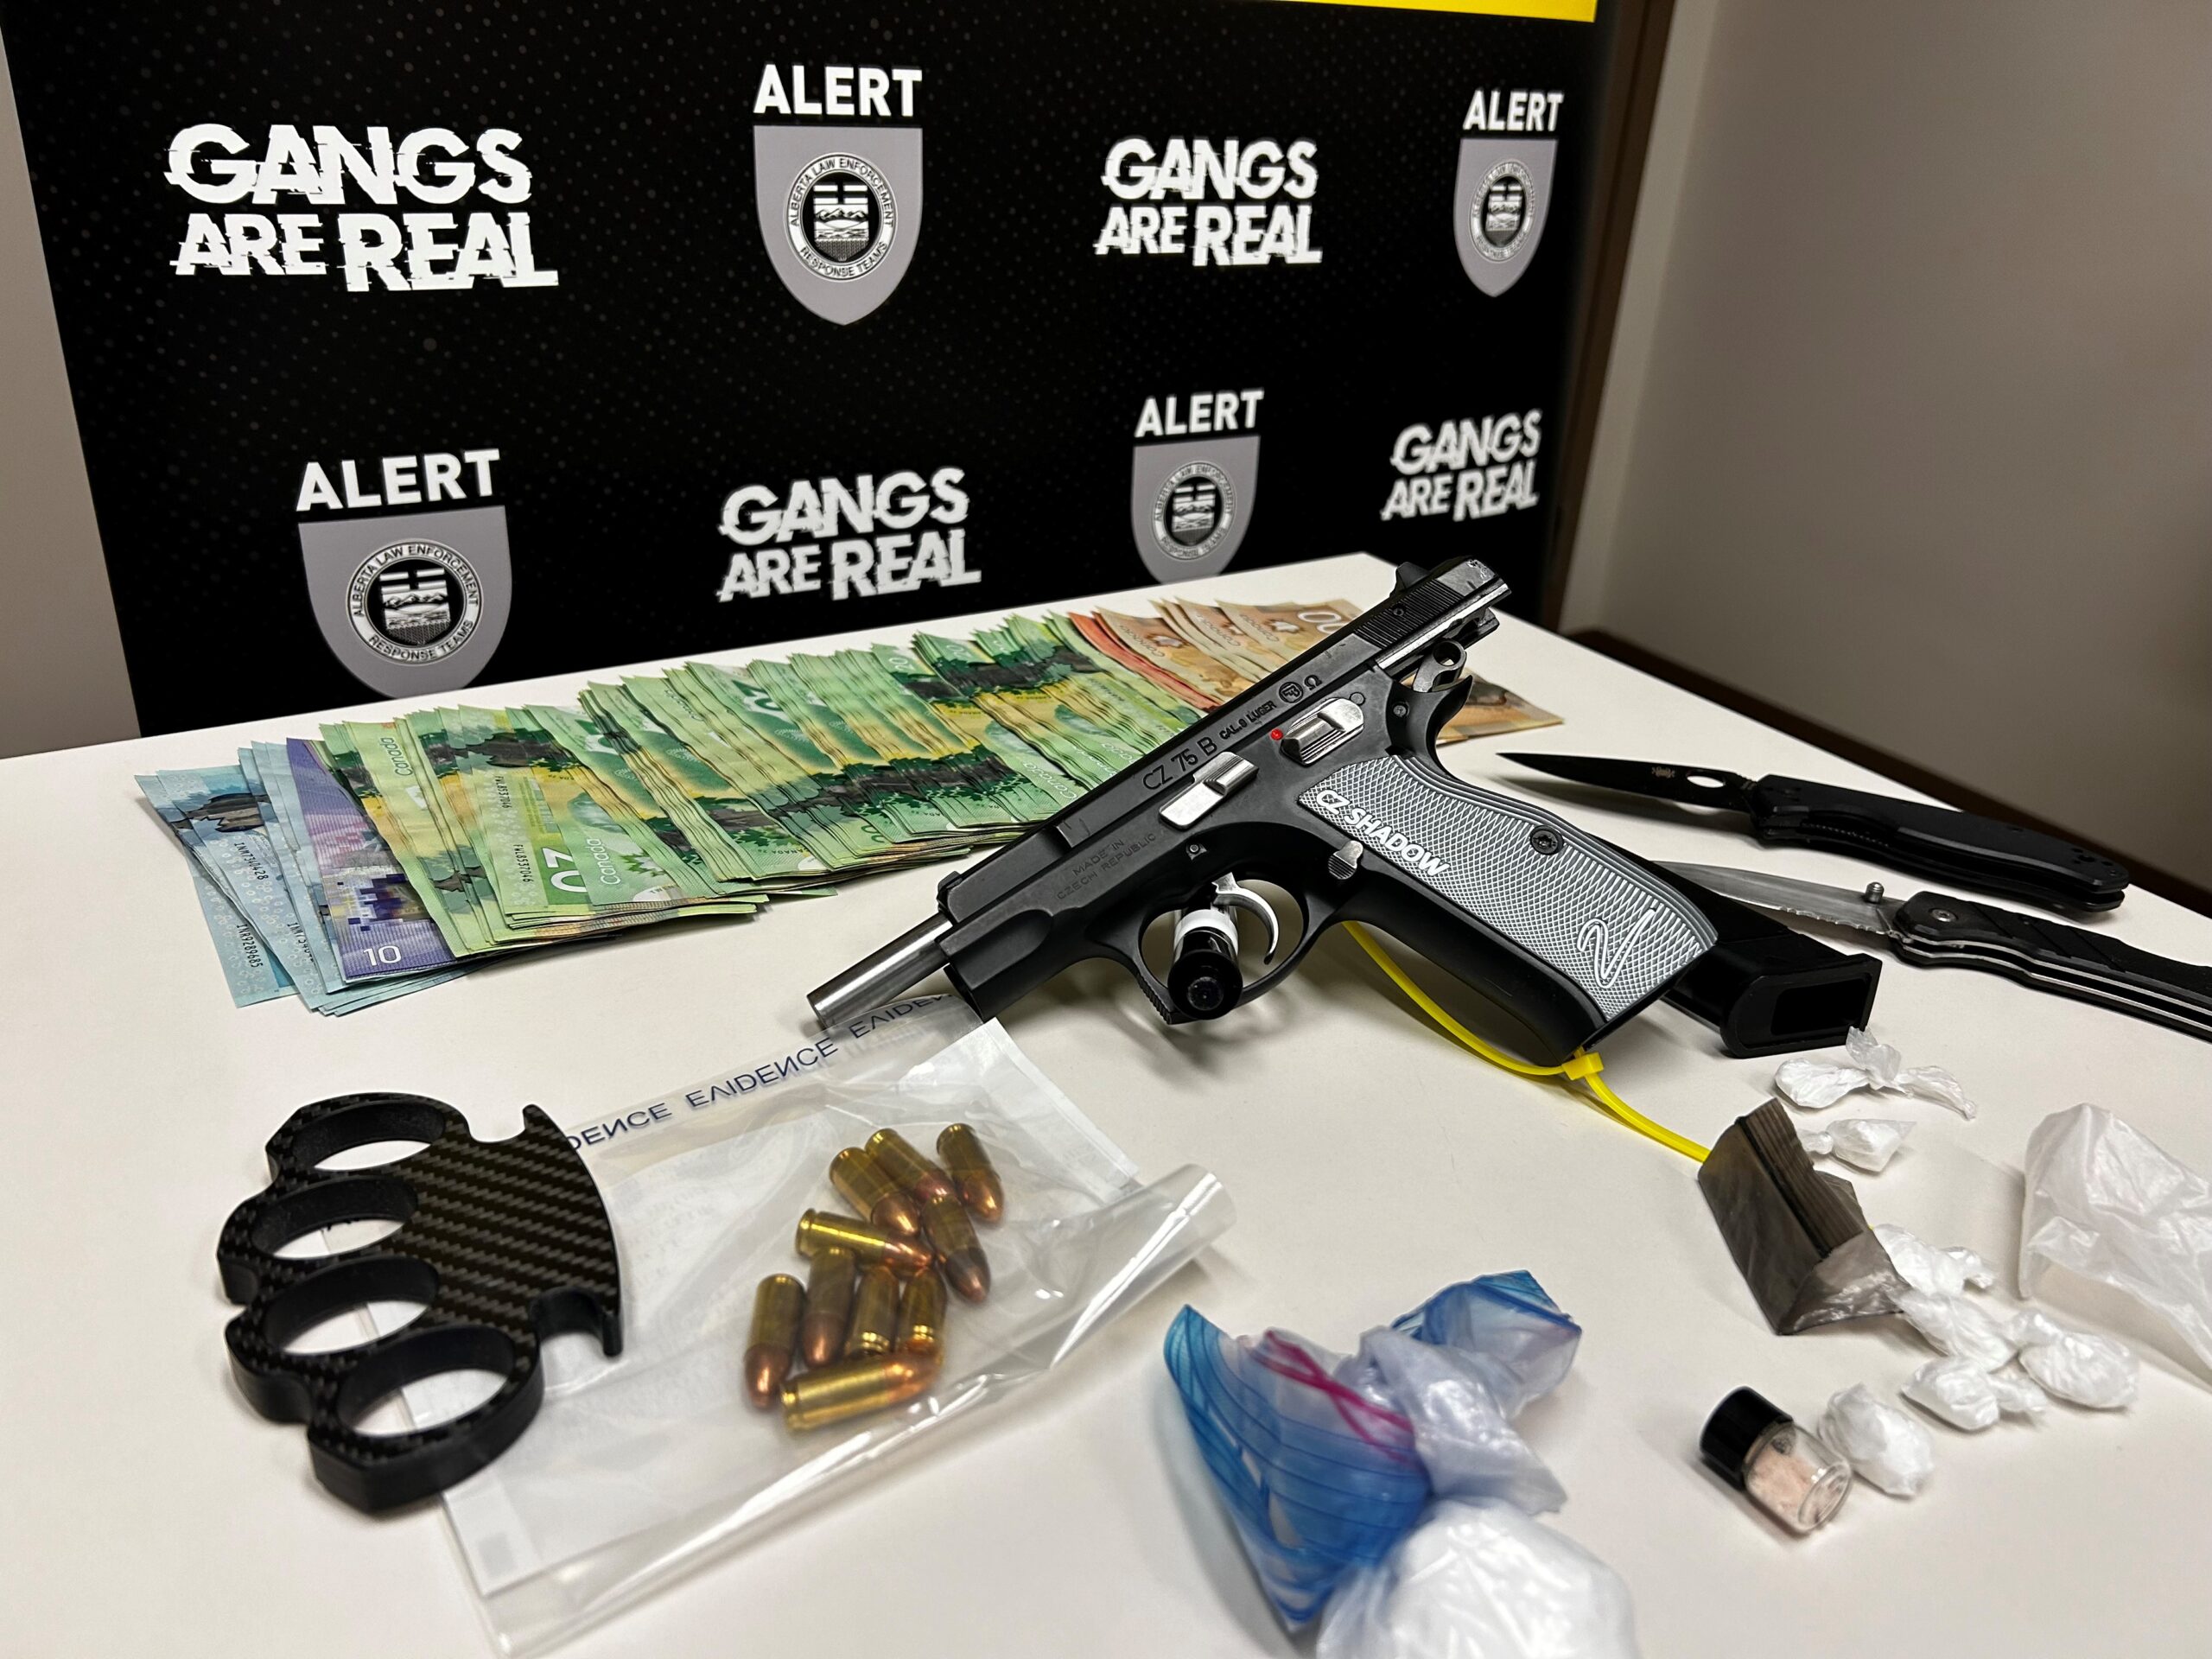 Stolen handgun seized during Red Deer arrests